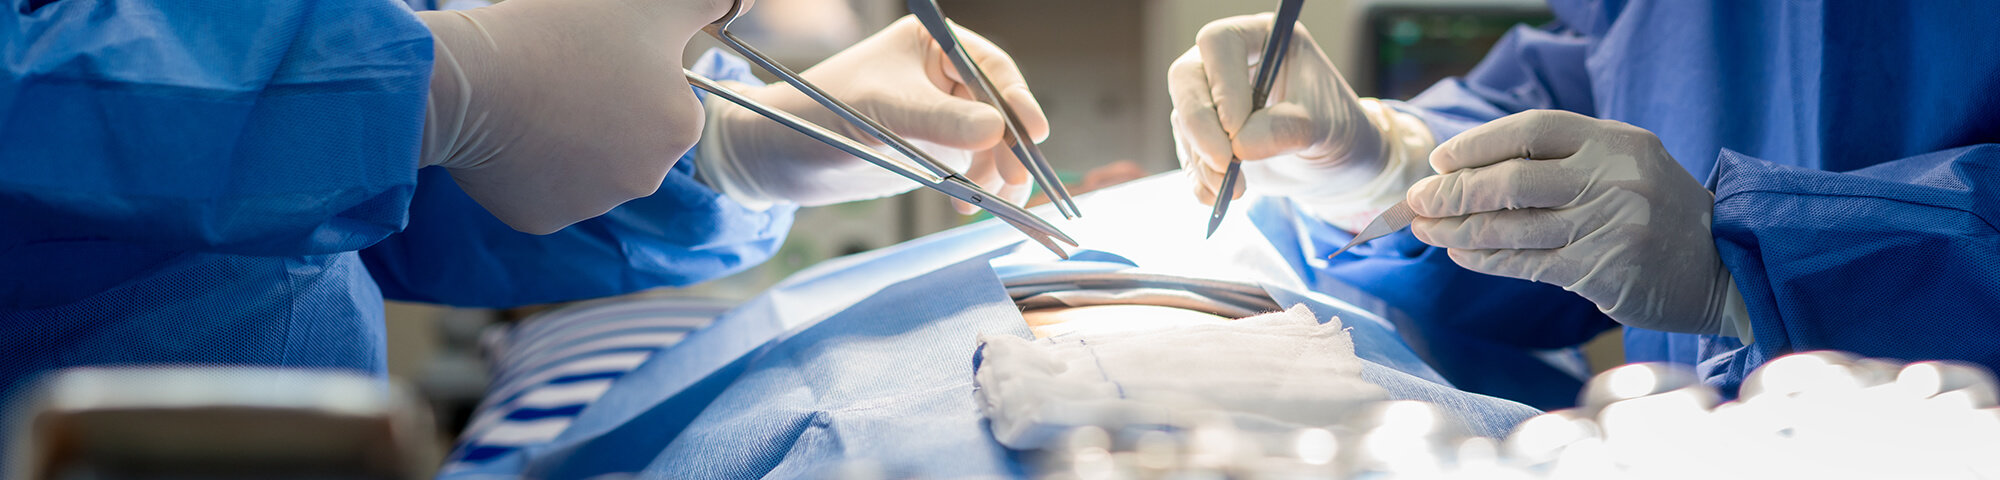 Ärzte operierern in gefäßchirurgischer Operation